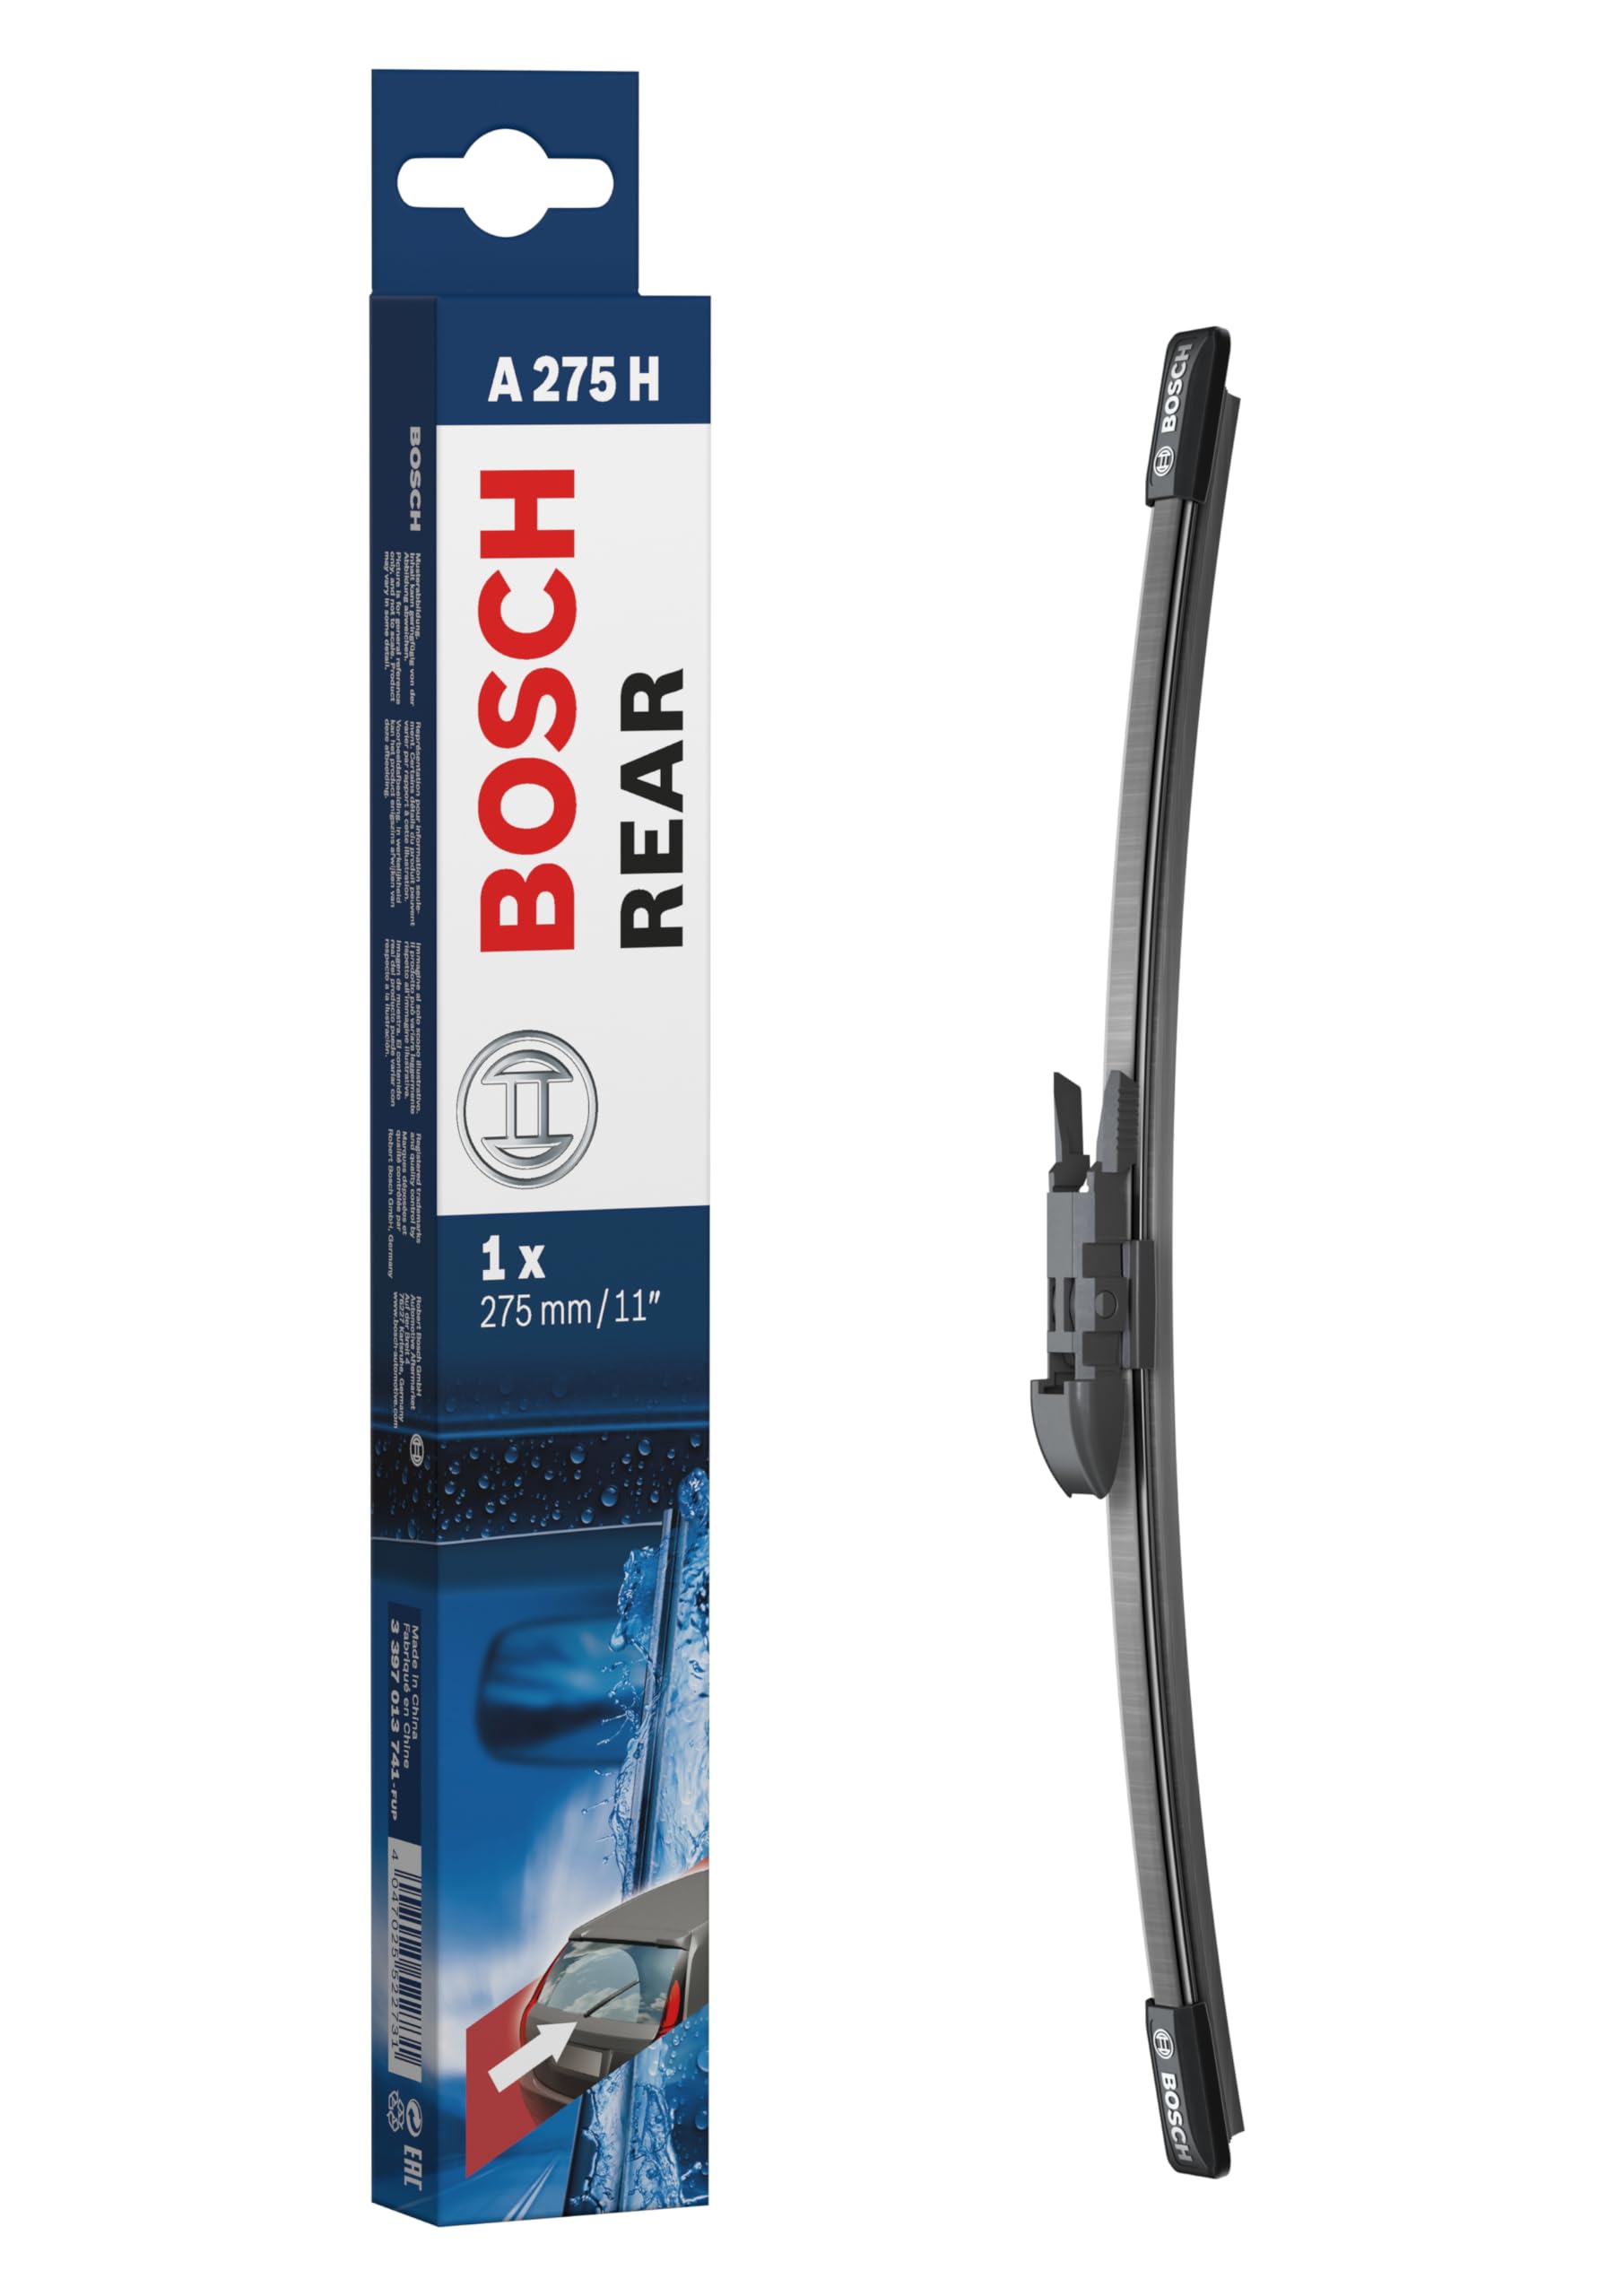 Bosch Scheibenwischer Rear A275H, Länge: 265mm – Scheibenwischer für Heckscheibe von Bosch Automotive